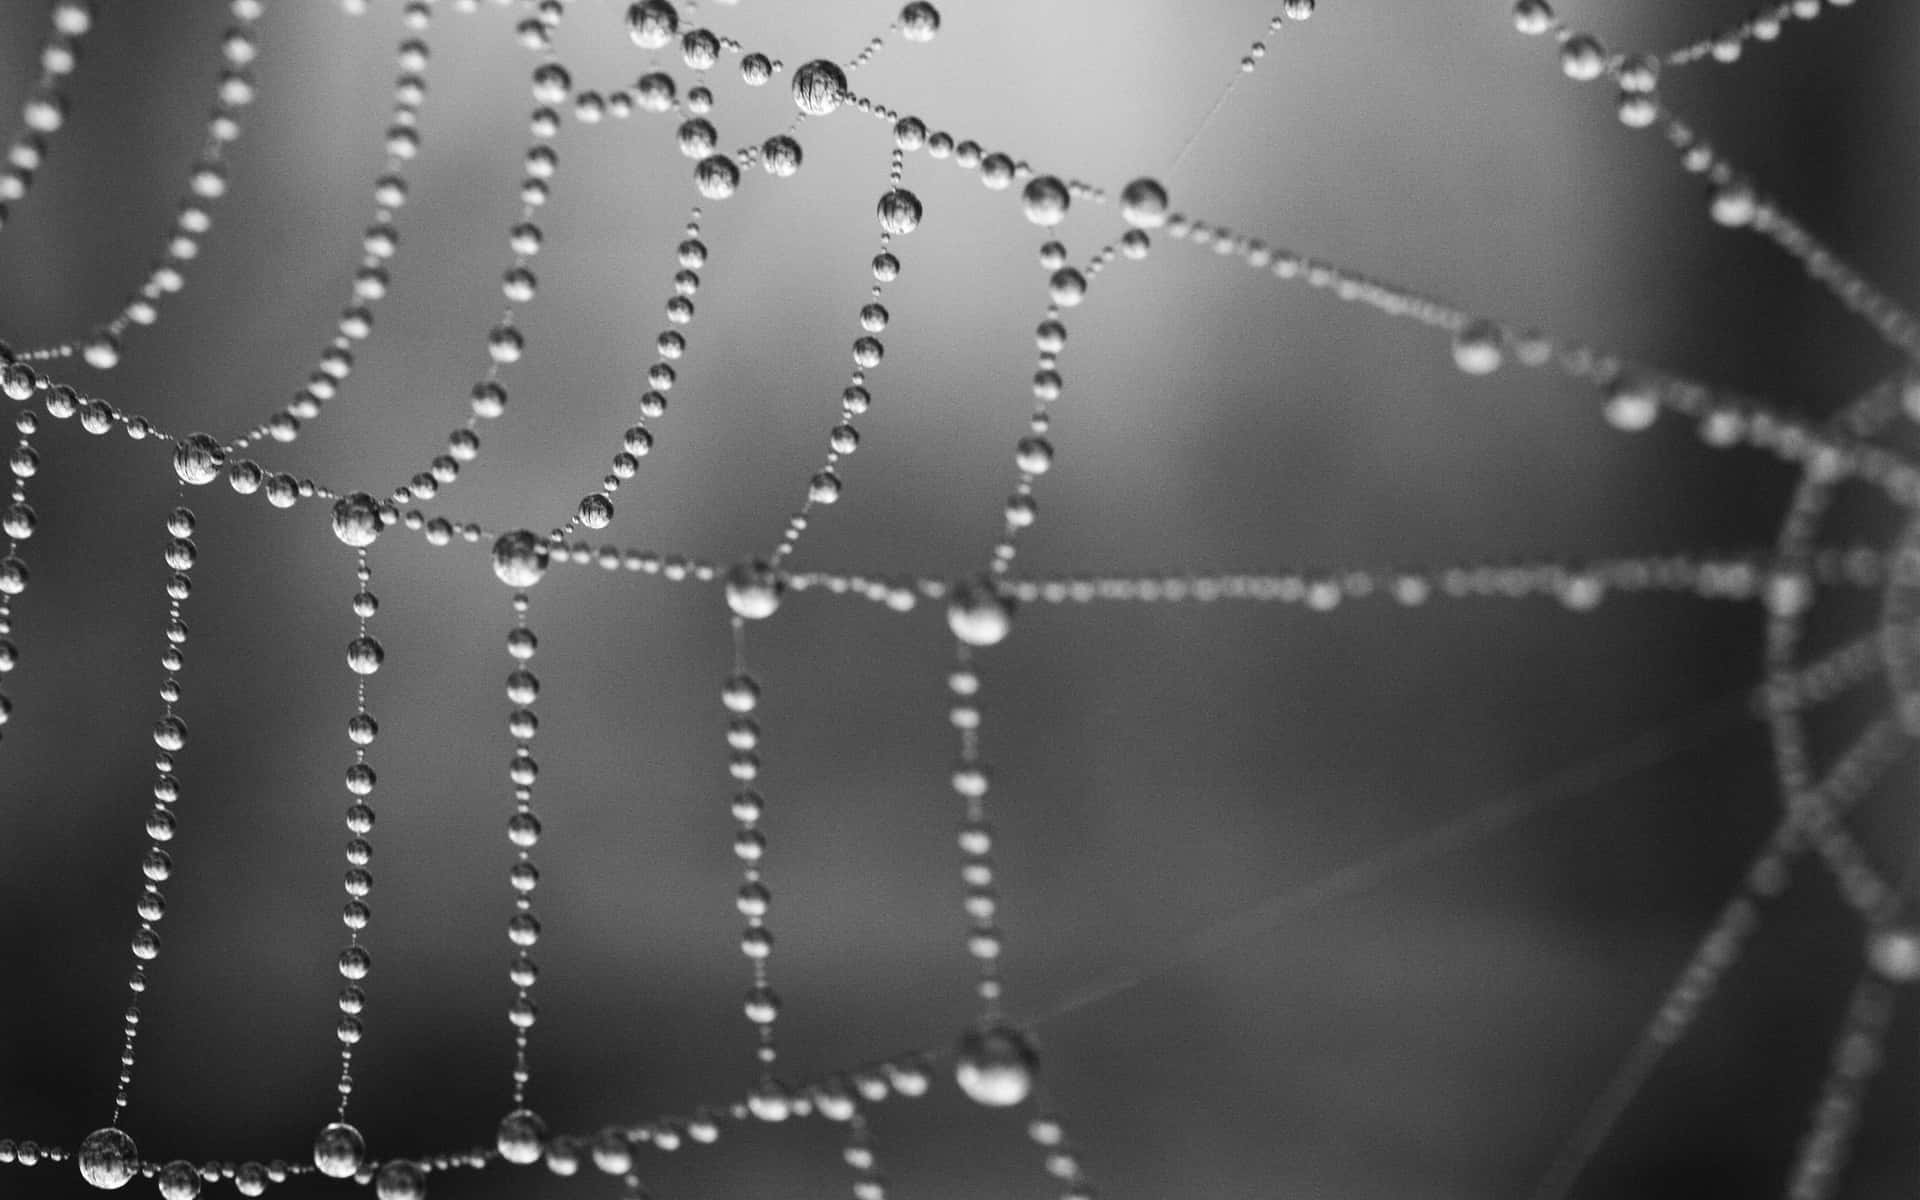 Spider Web Background Black Blur Water Drops